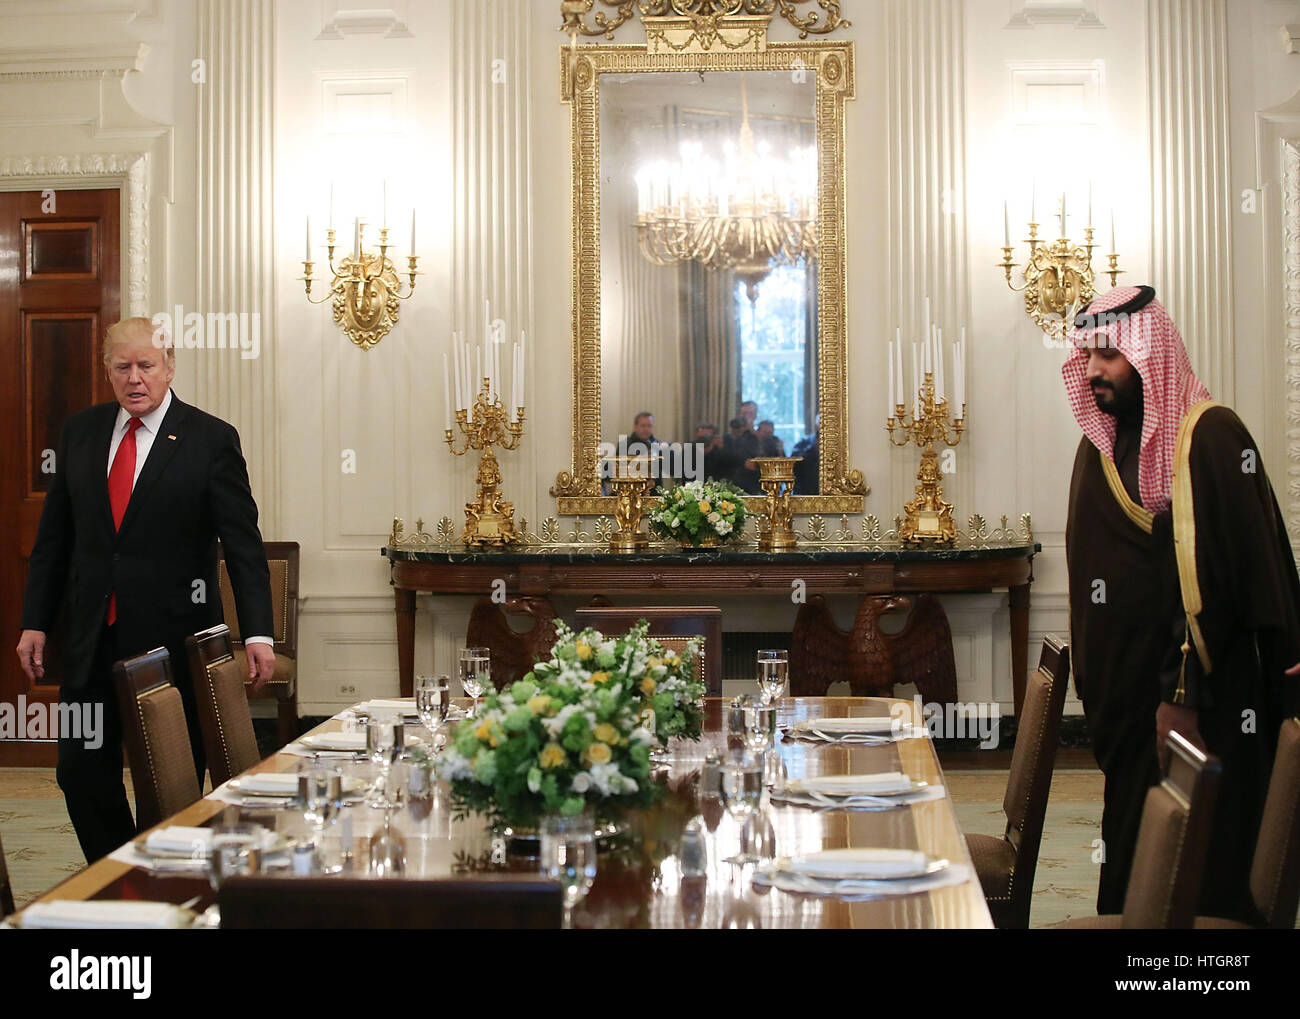 Washington DC, USA 14 mars 2017 Le président des Etats-Unis, Donald Trump (L) se prépare à déjeuner avec Mohammed bin Salman, Vice-Prince héritier et Ministre de la défense du Royaume d'Arabie saoudite, dans la salle à manger d'État à la Maison Blanche, le 14 mars Banque D'Images